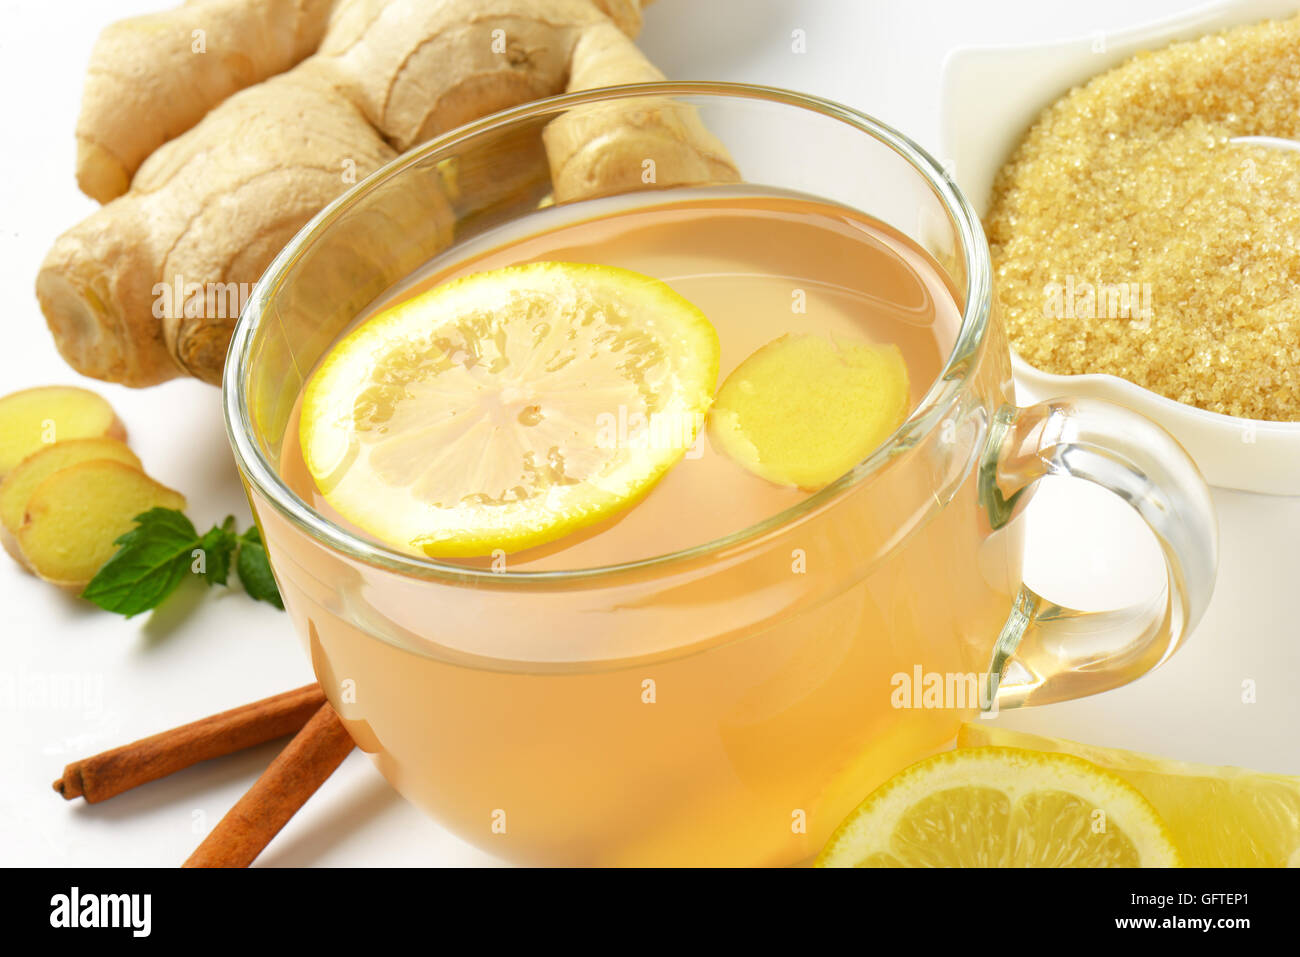 Dettaglio della tazza di tè allo zenzero con succo di limone, lo zenzero fresco e cannella Foto Stock